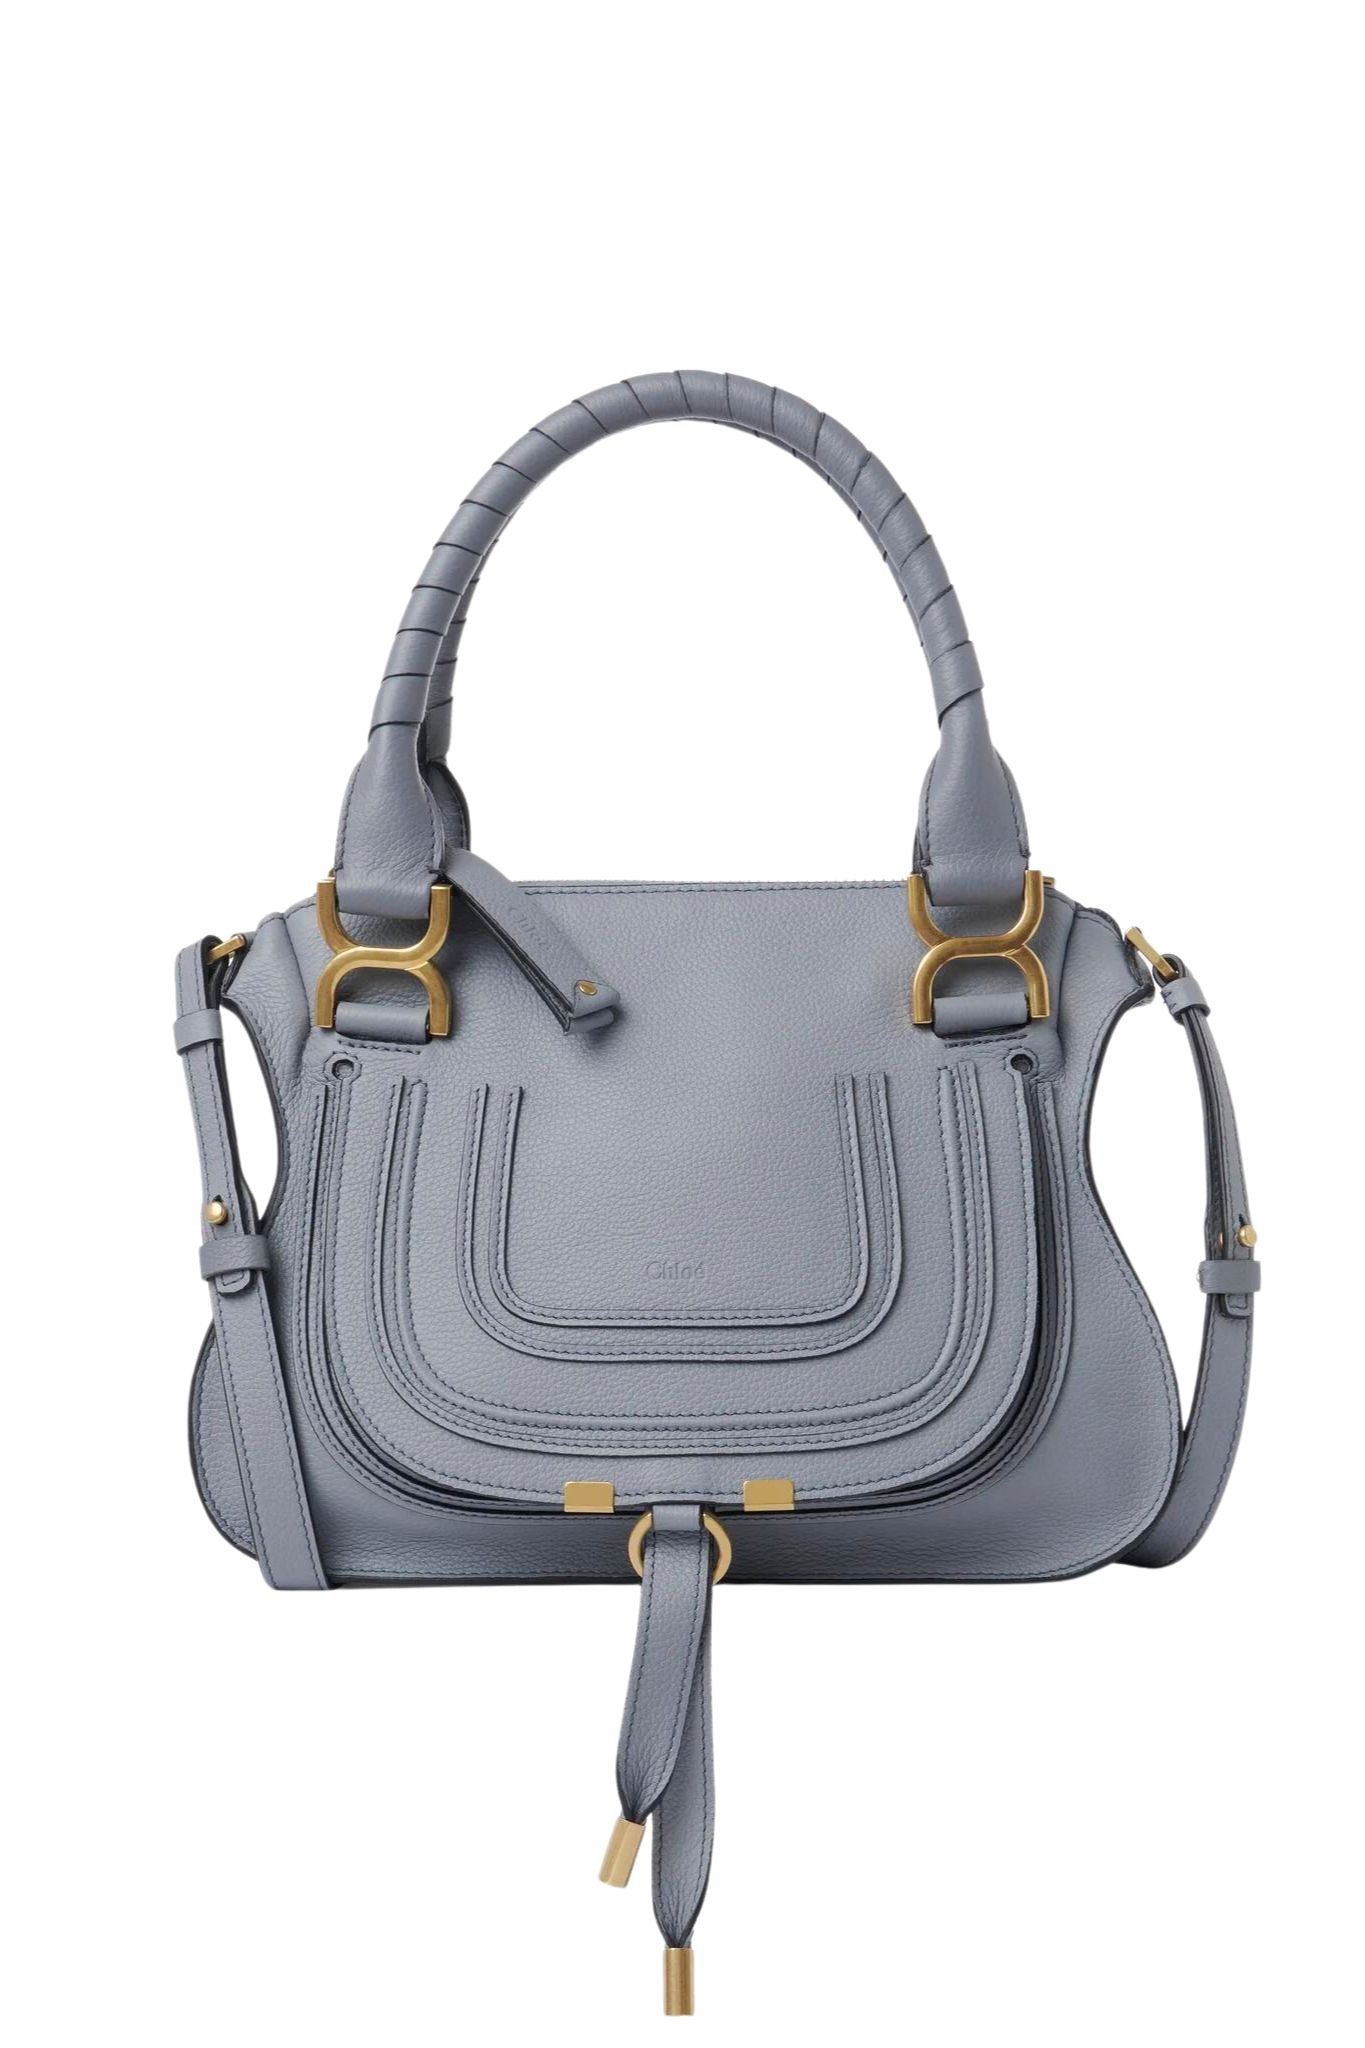 Chloé Marcie Small Leather Satchel Bag